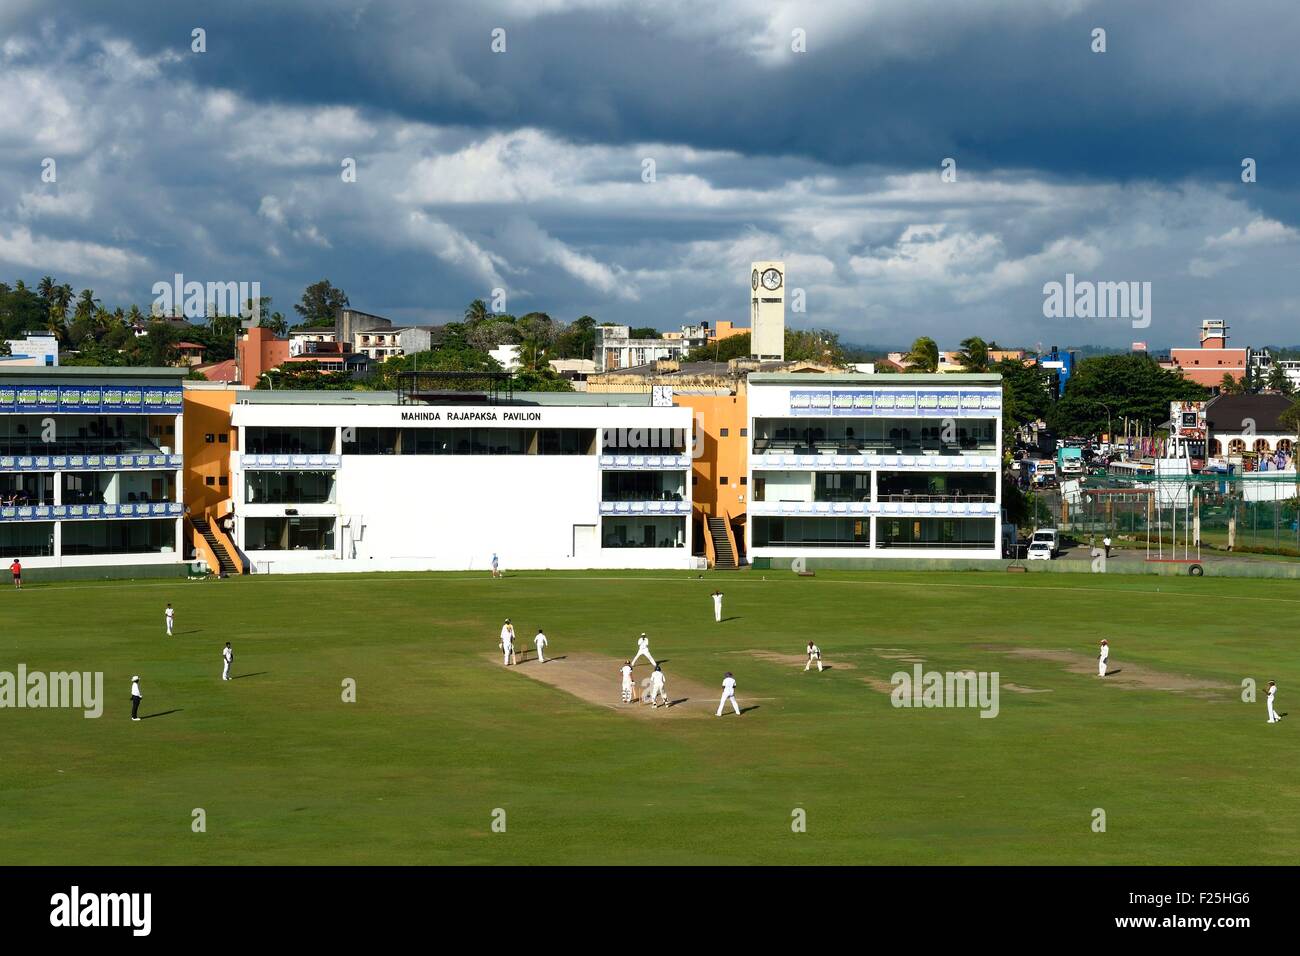 Sri Lanka, provincia del sur de Galle, partido de cricket Foto de stock